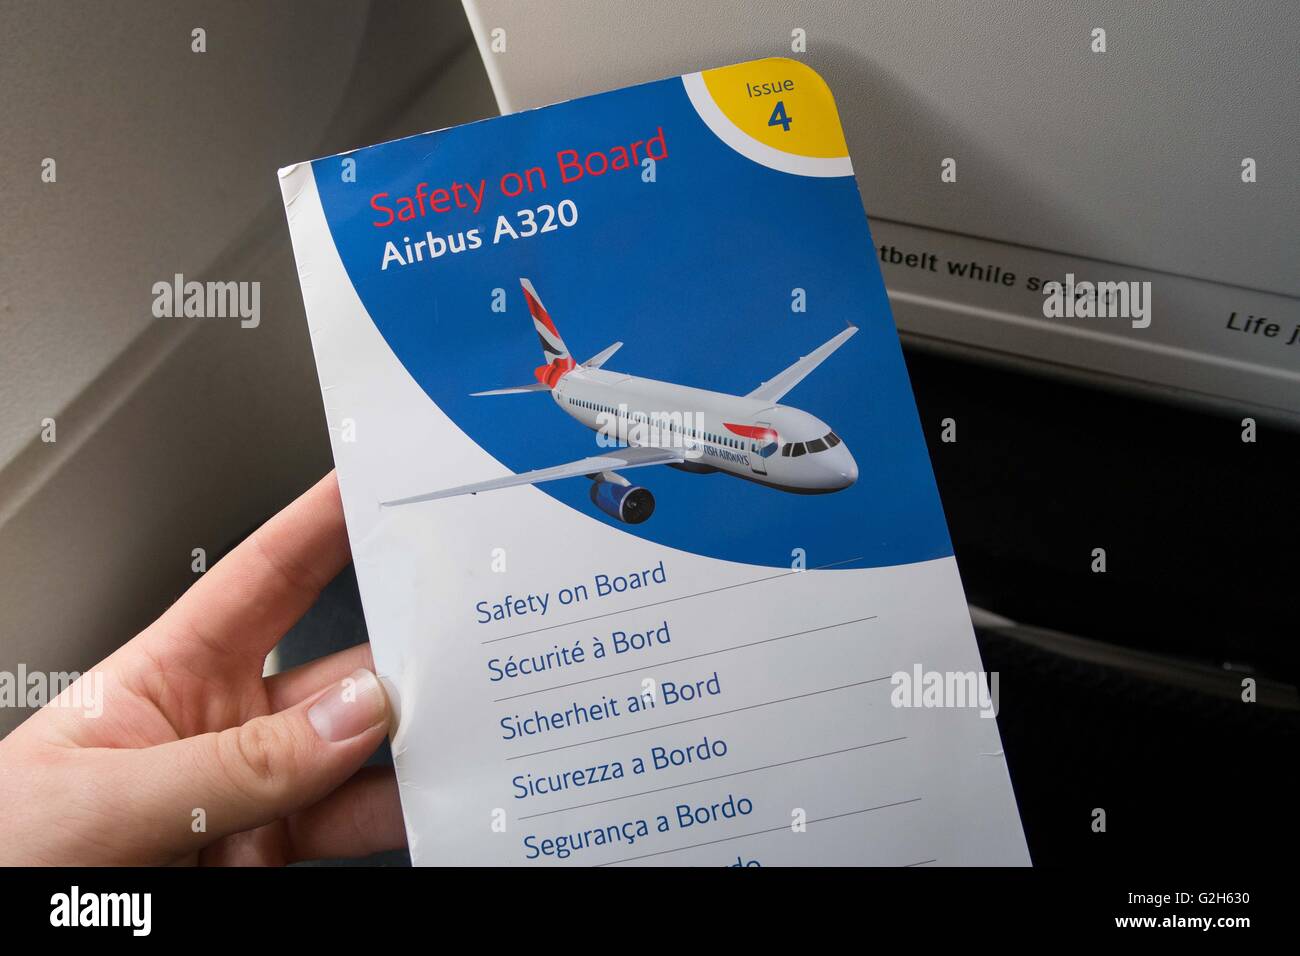 British Airways Airbus A320 Safety Card 